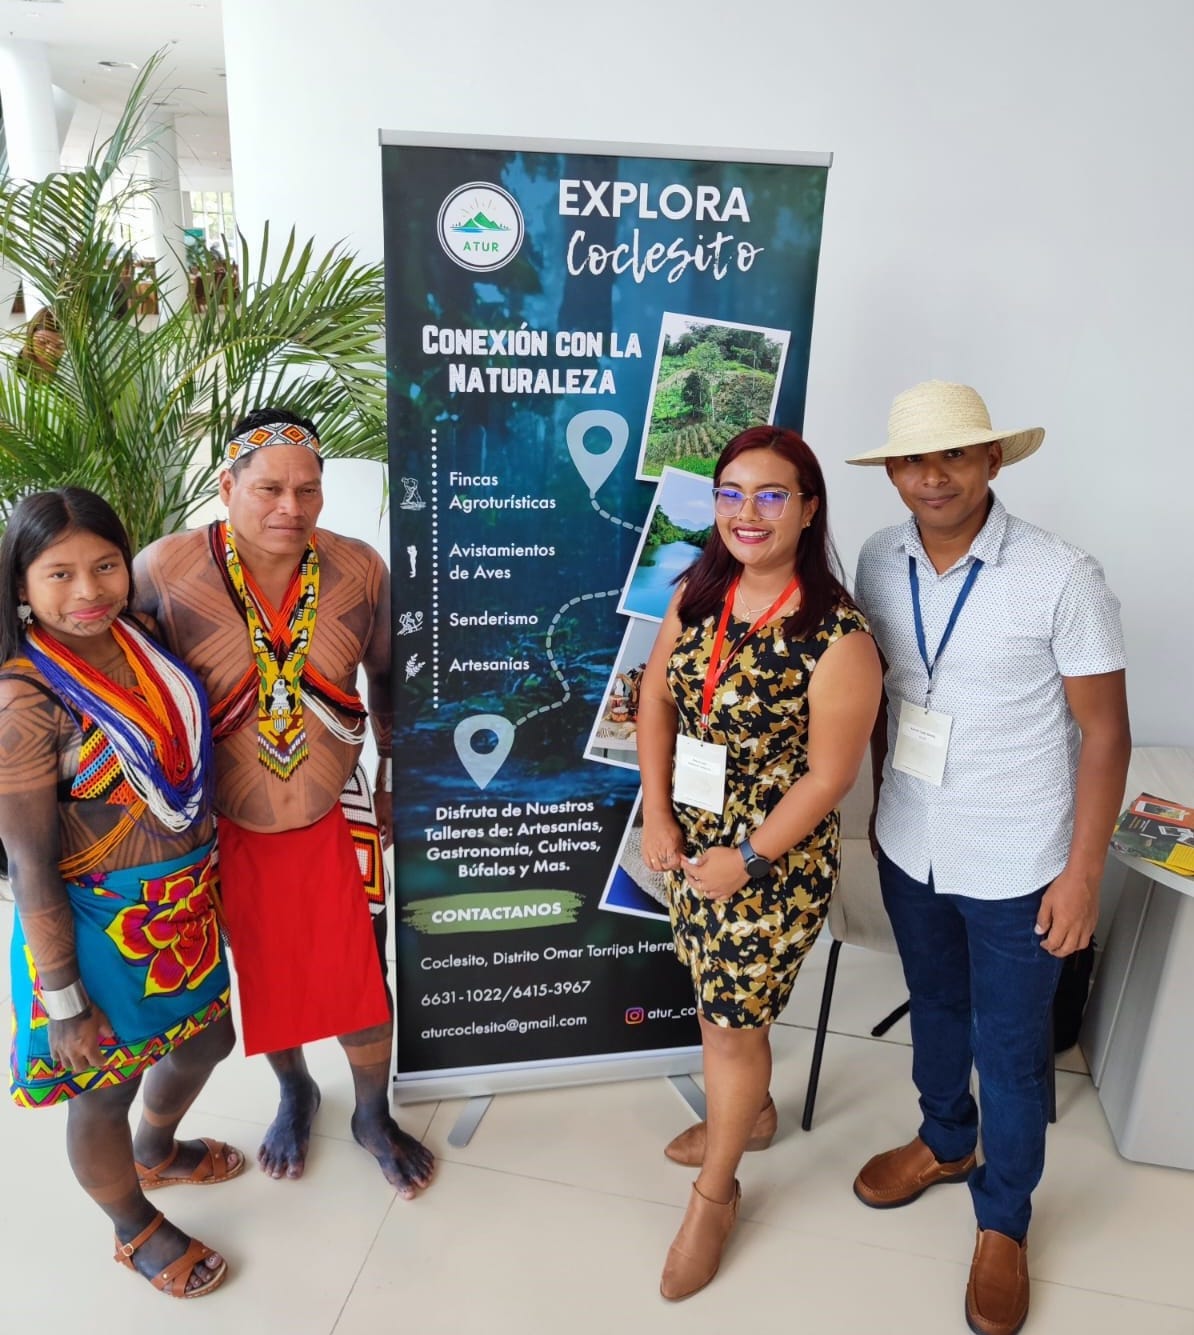 Con el apoyo de Cobre Panamá, ATUR promueve el turismo comunitario y sostenible en Coclesito